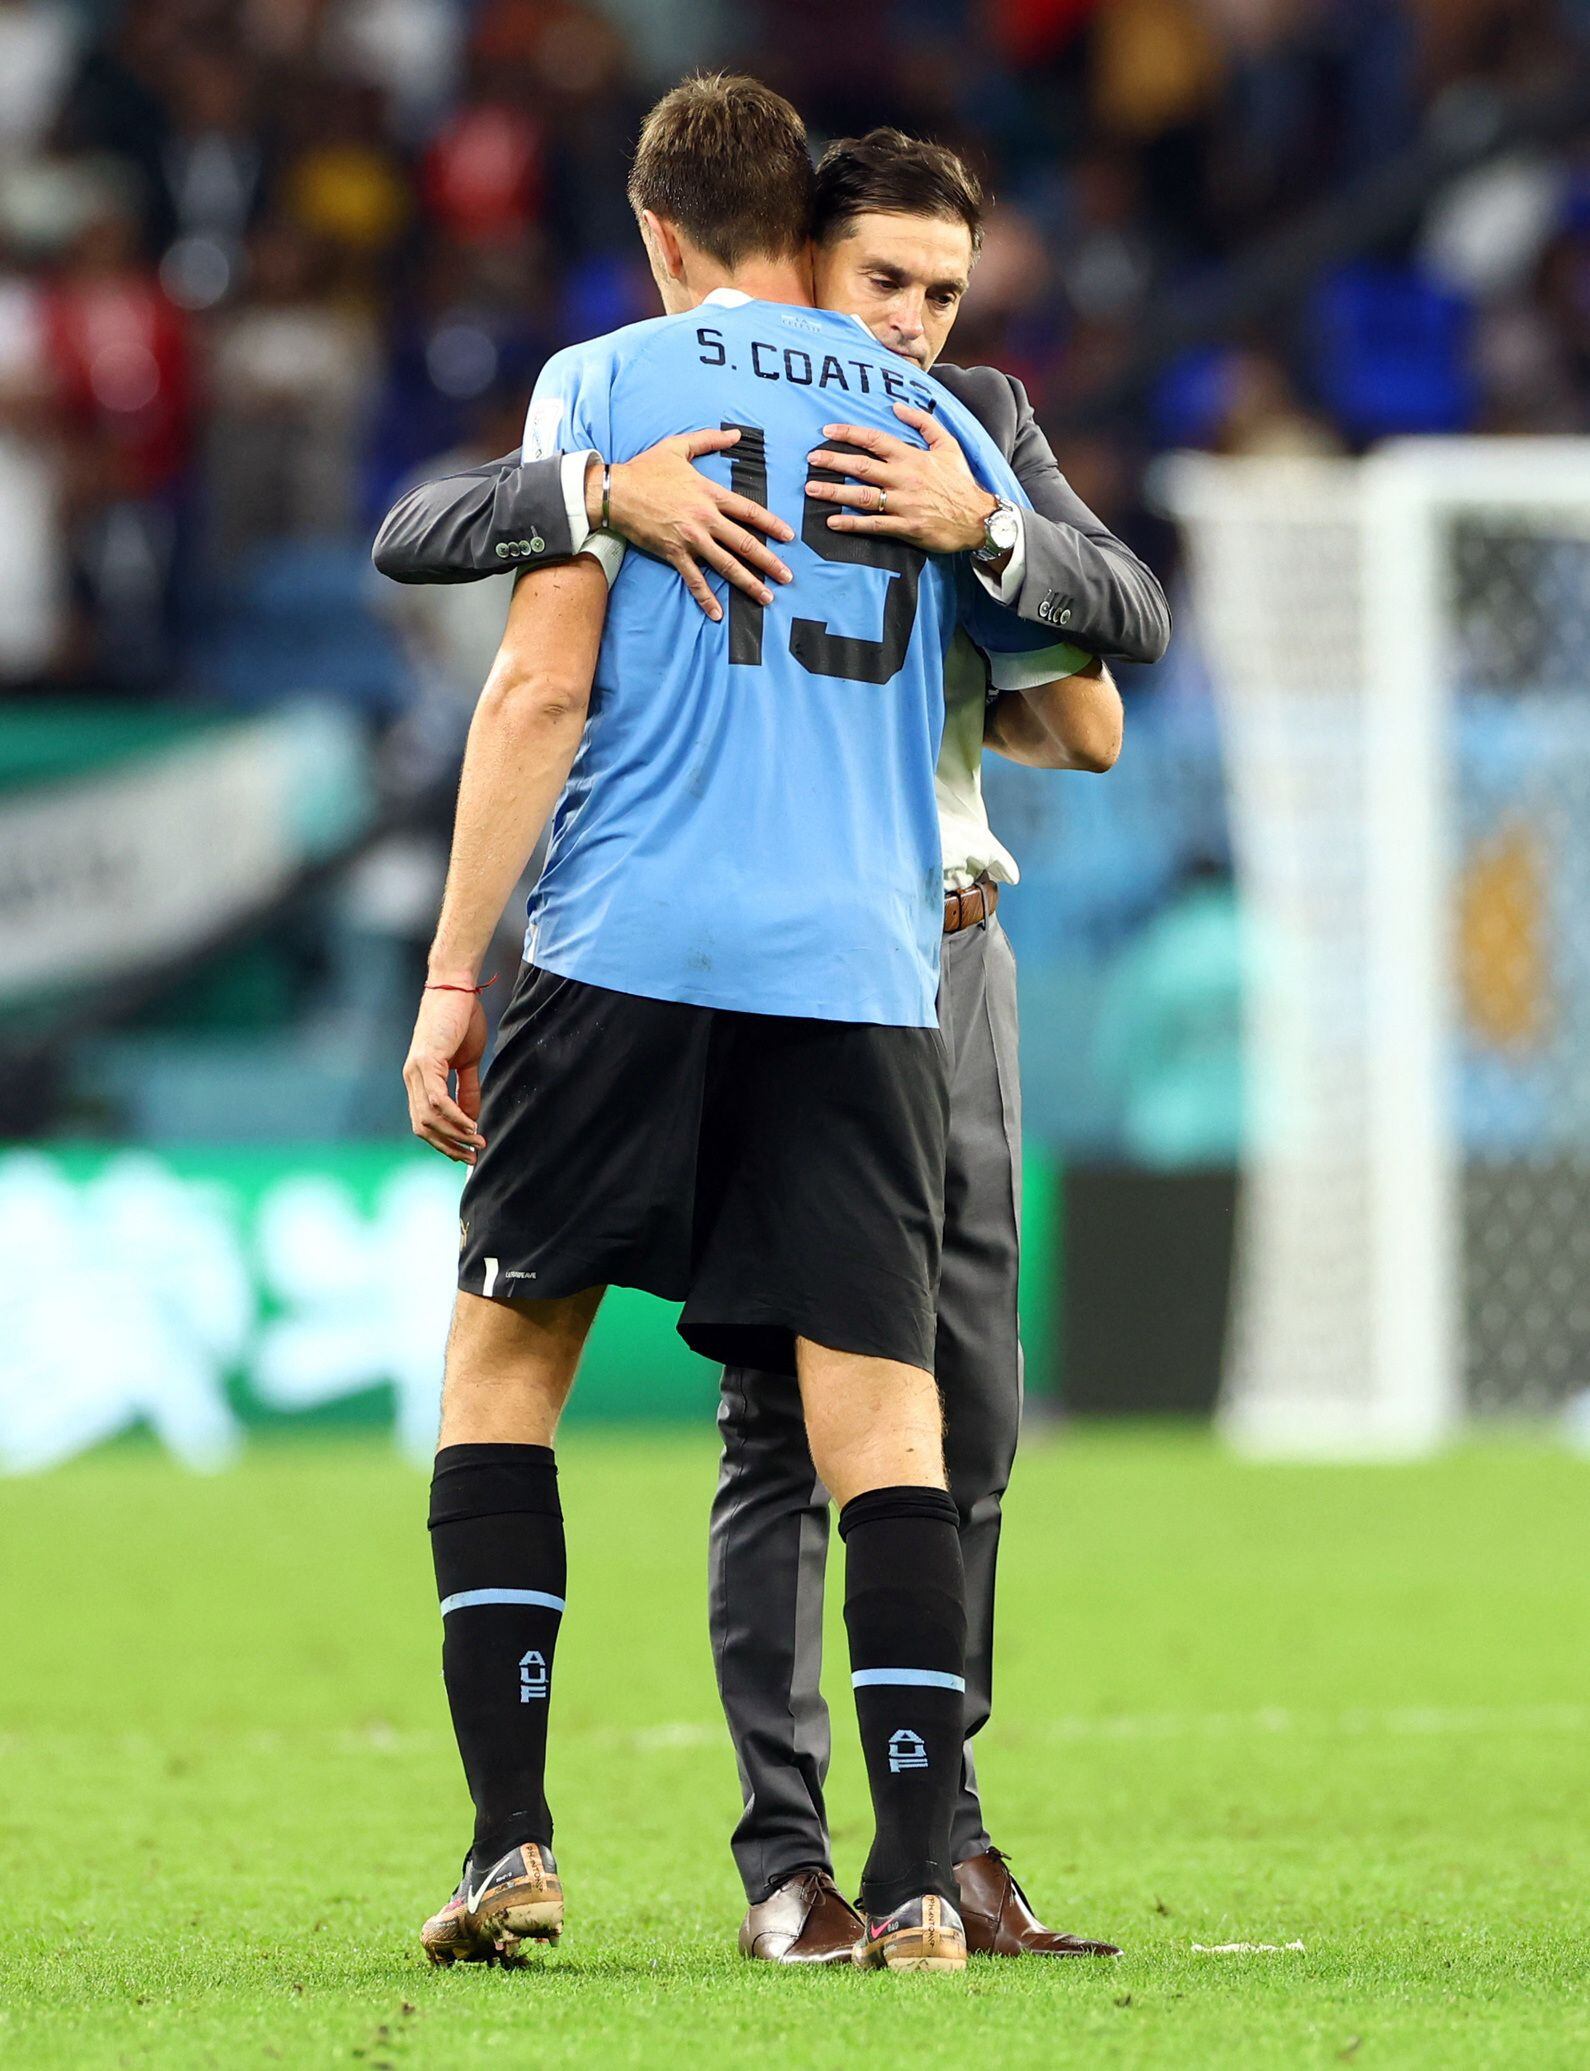 El entrenador consolando a Sebastián Coates tras la eliminación (Reuters/Bernadett Szabo)